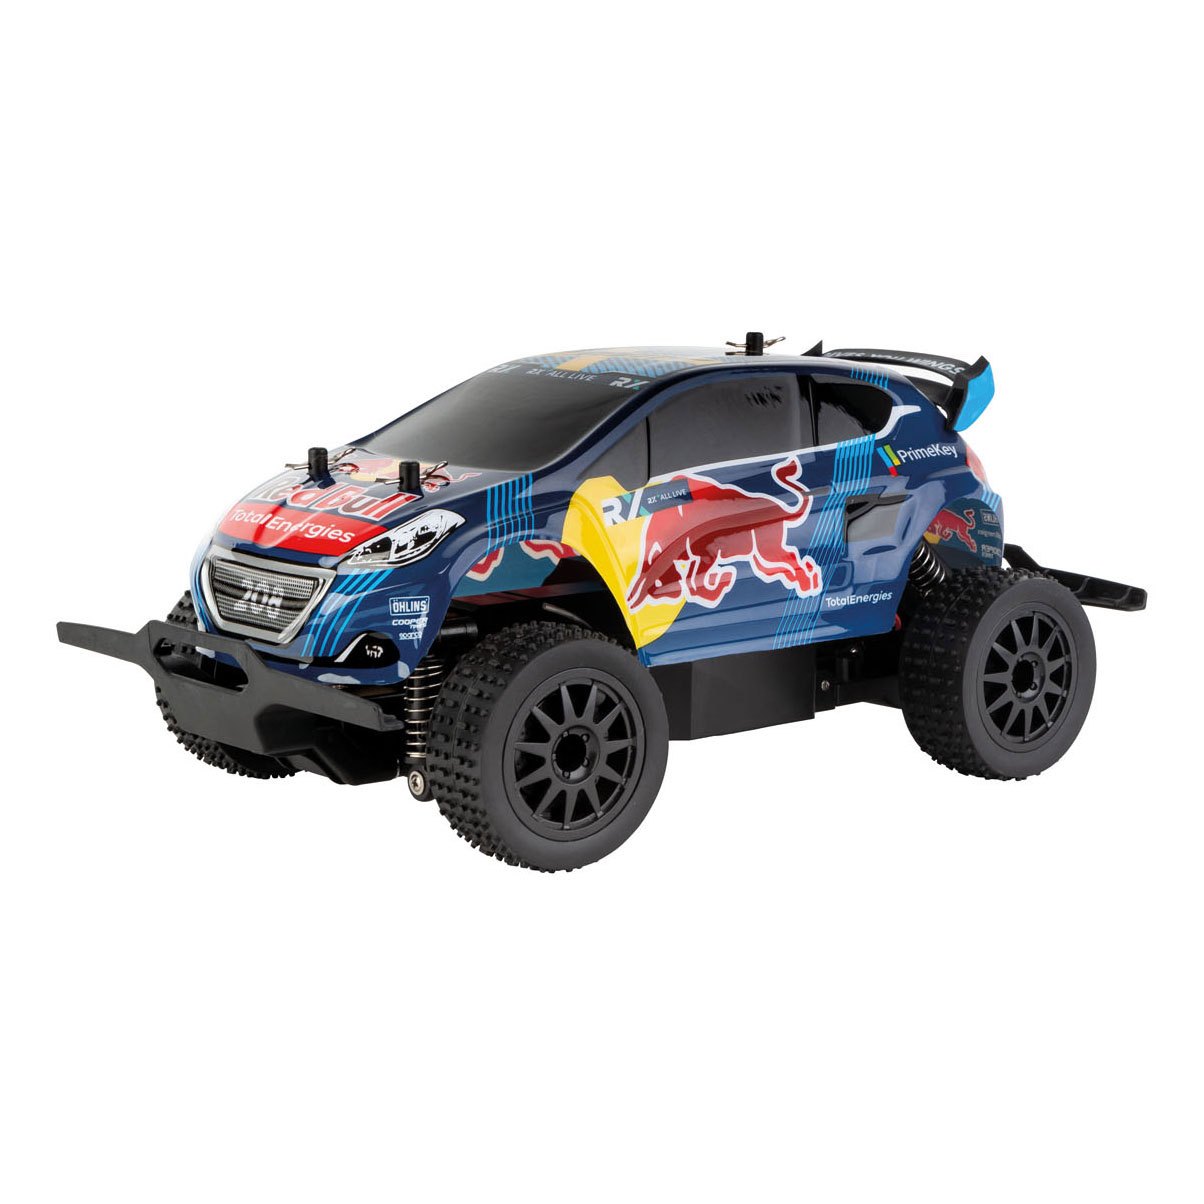 Goedkeuring Sluit een verzekering af Wederzijds Carrera RC Red Bull Rallycross Bestuurbare Auto - Speelgoed Winkel Toy plaza